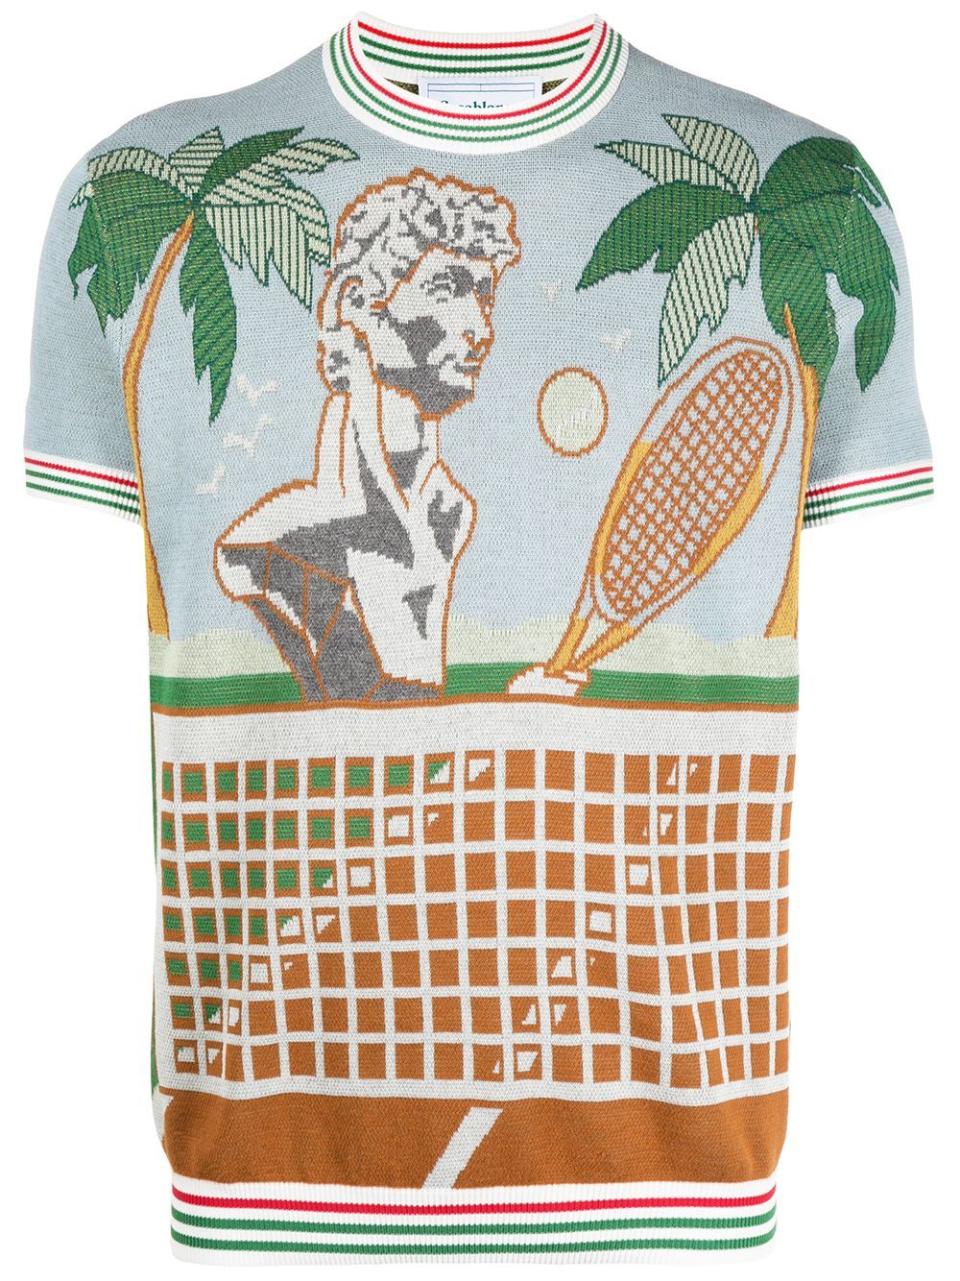 2) Tennis Court Print T-Shirt